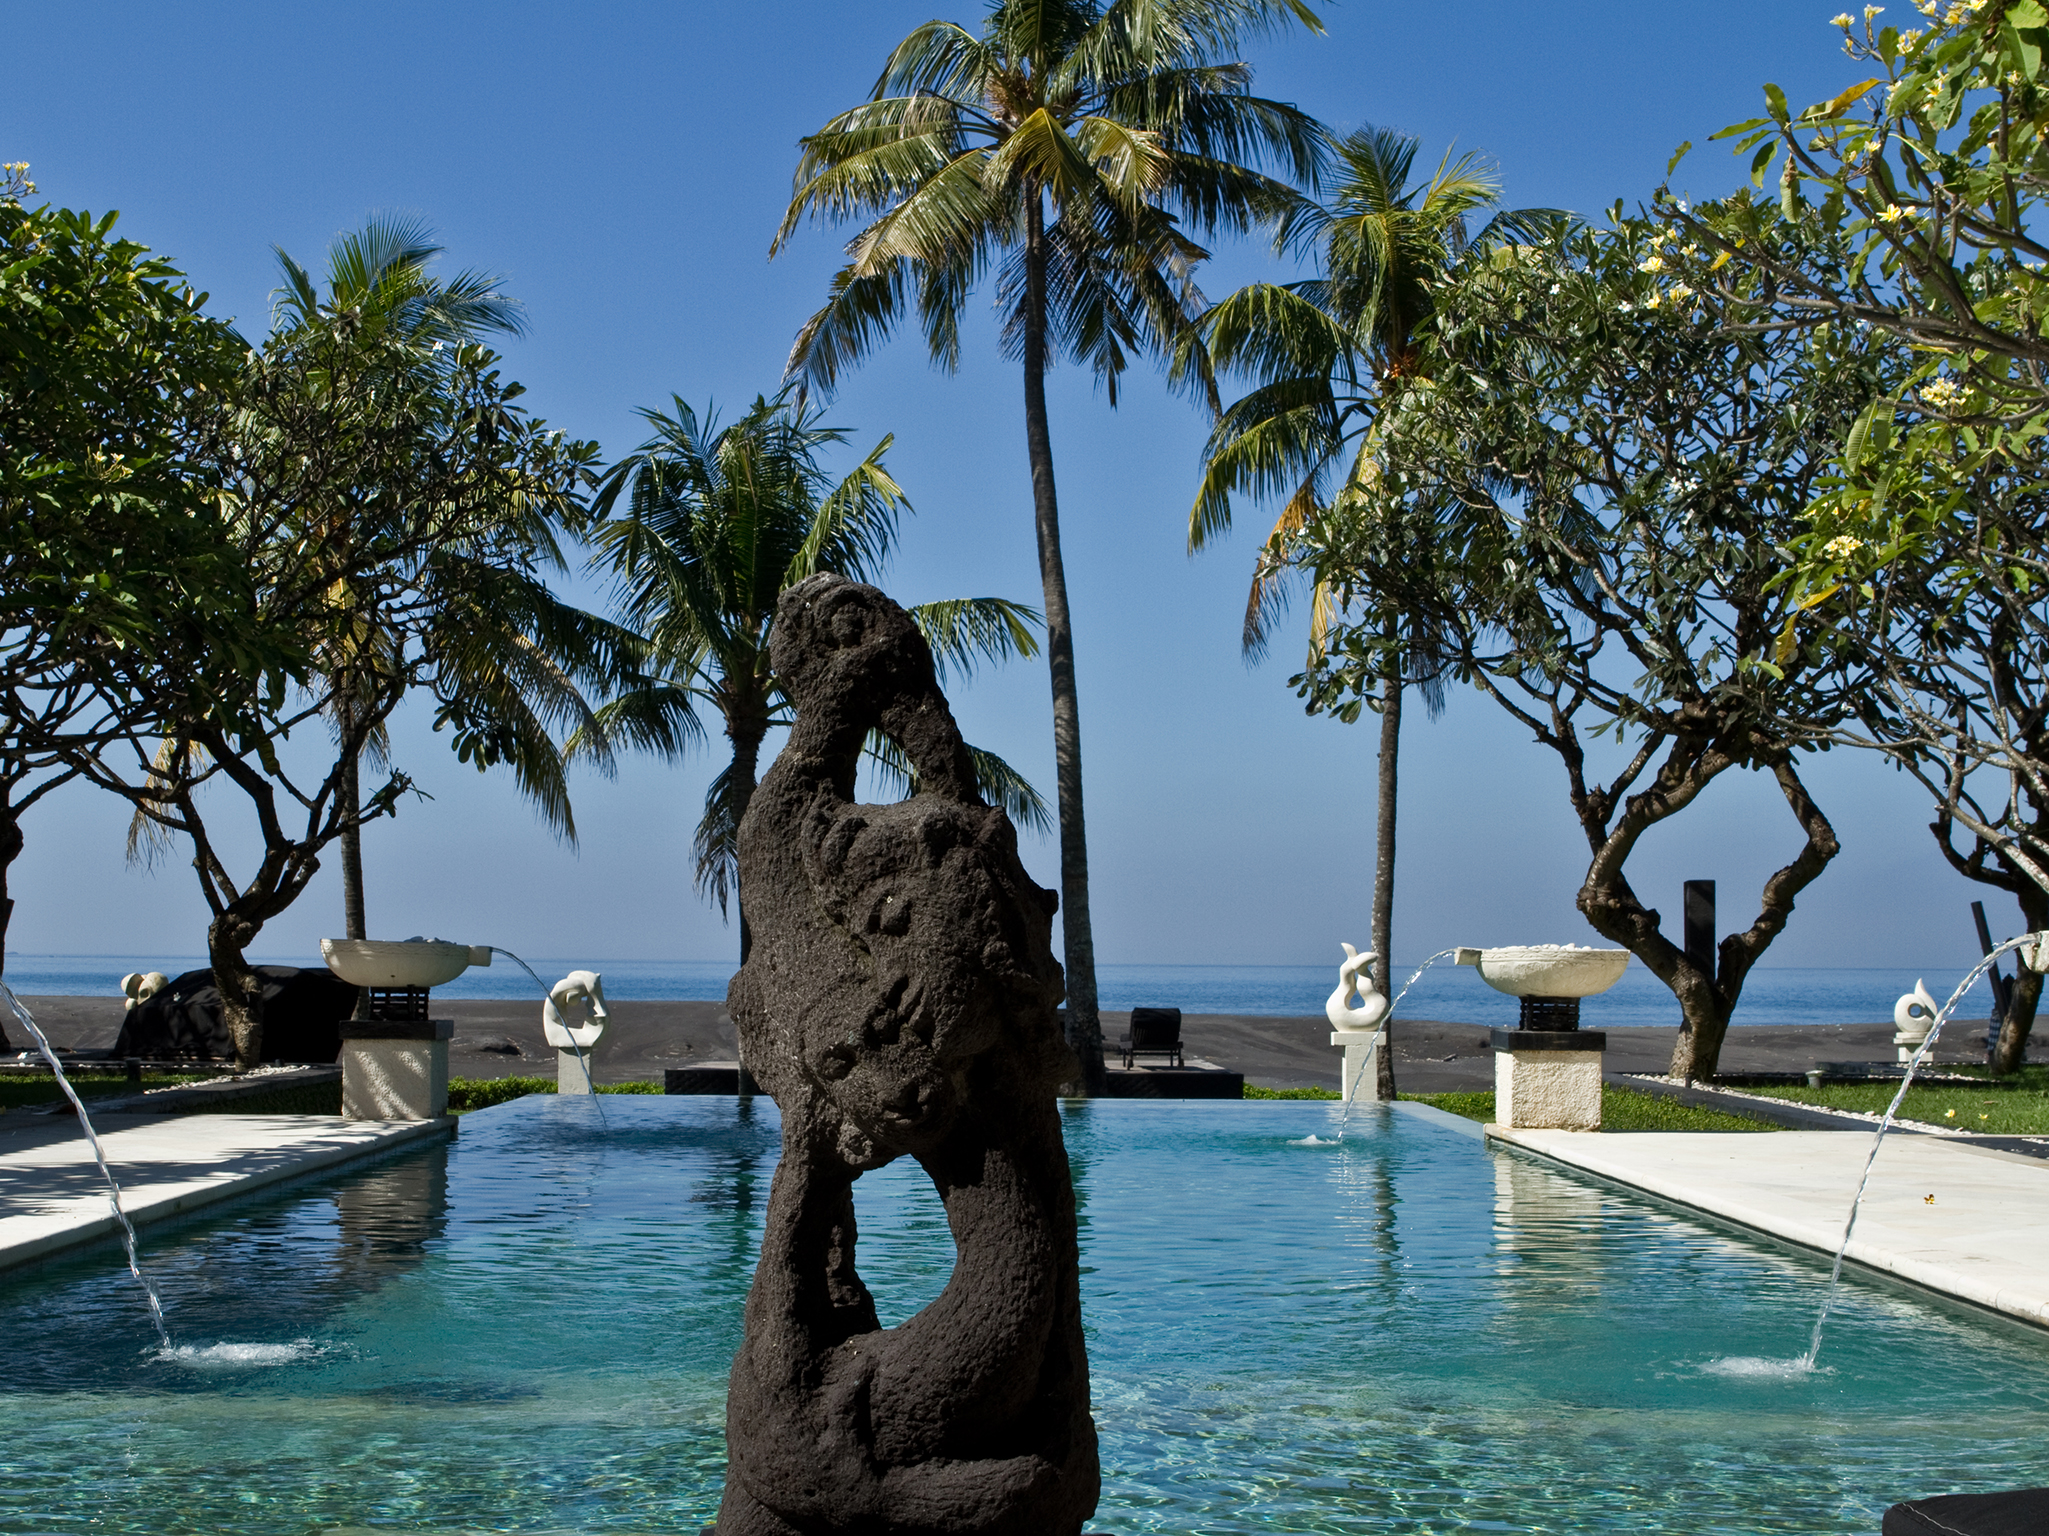 The Ylang Ylang - Art with seaview backdrop - The Ylang Ylang, Ketewel, Bali